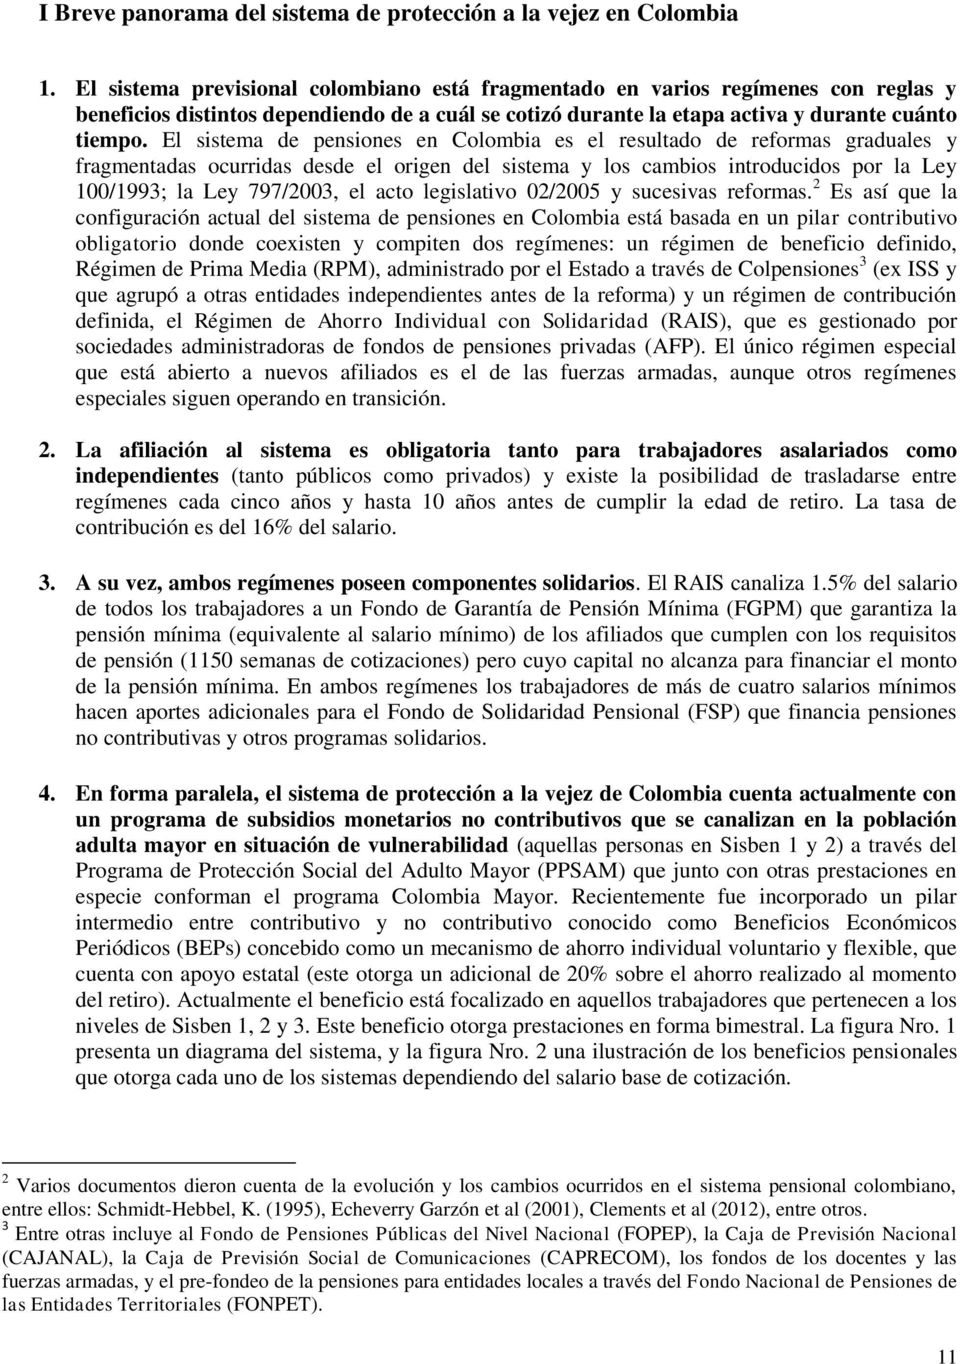 El sistema de pensiones en Colombia es el resultado de reformas graduales y fragmentadas ocurridas desde el origen del sistema y los cambios introducidos por la Ley 100/1993; la Ley 797/2003, el acto